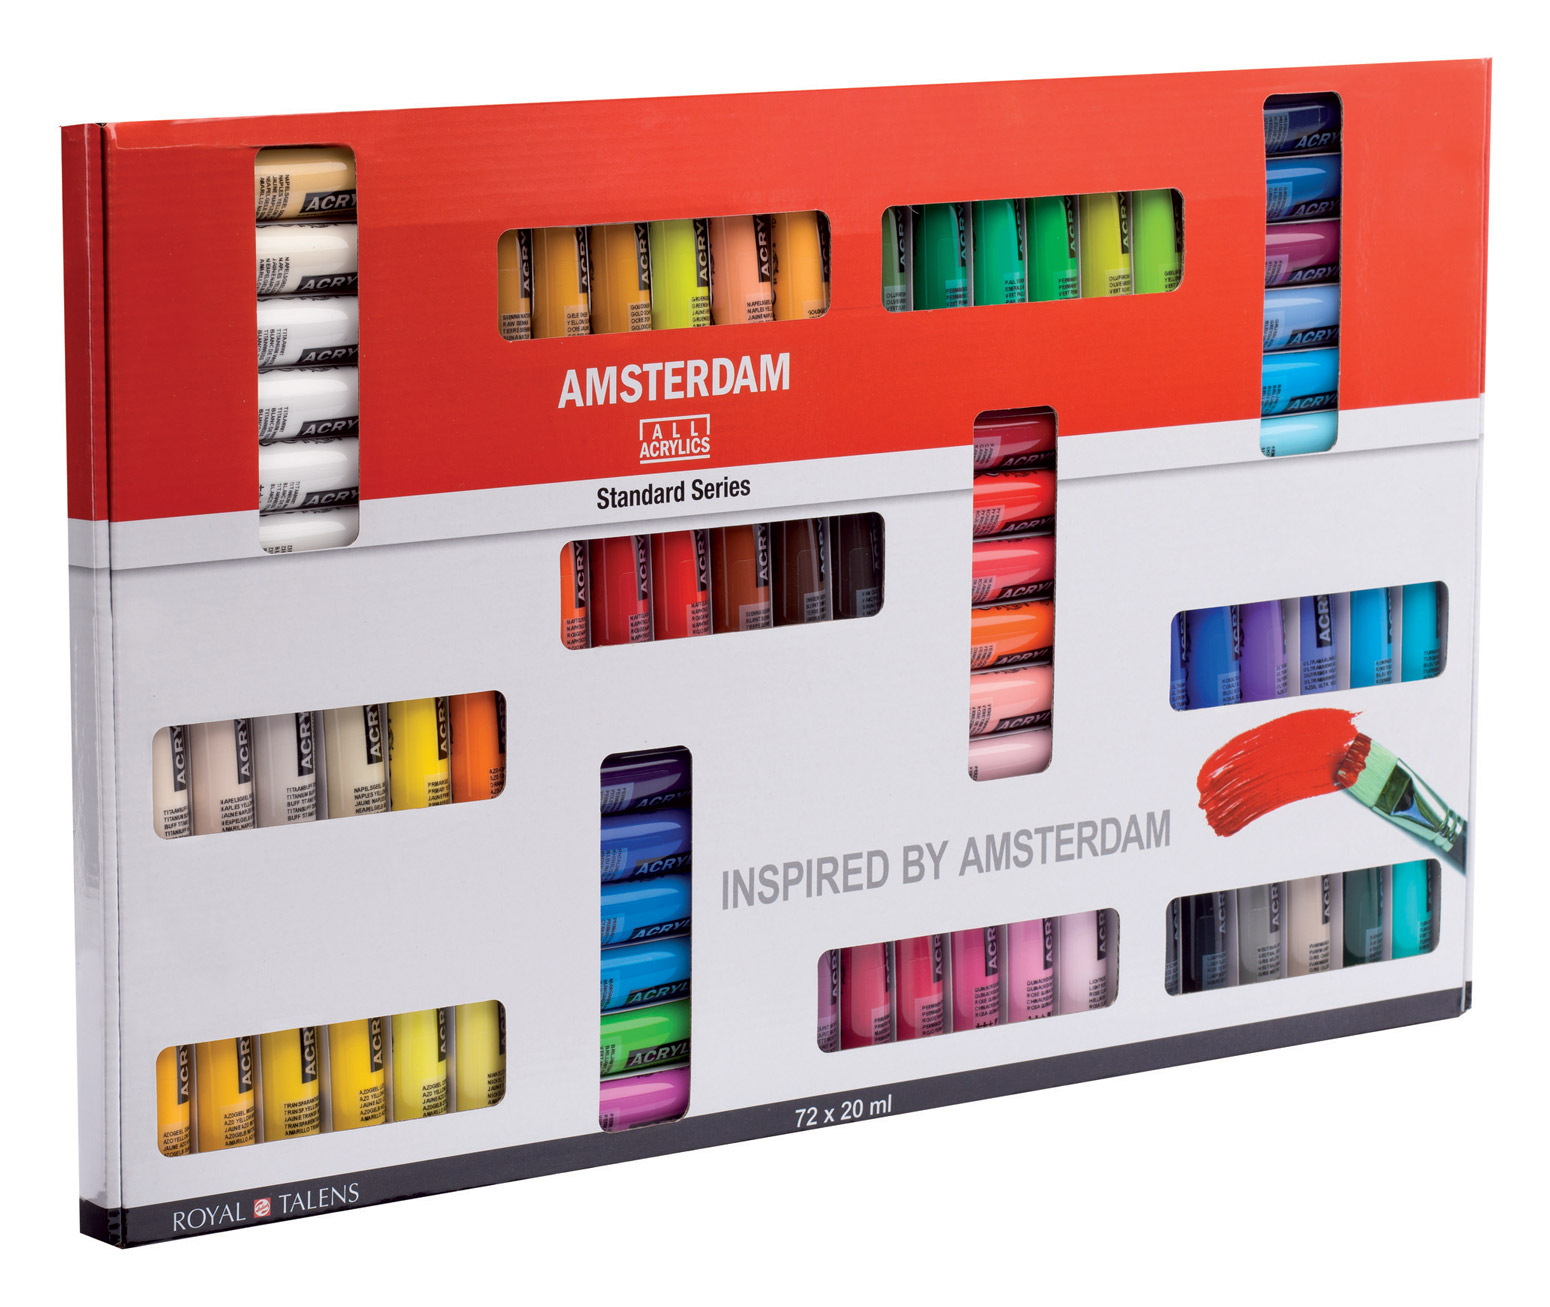 Acrylverf sets - Amsterdam Acrylics Acrylverven hulpmiddelen - Kunstschildersmaterialen - Producten - Van der